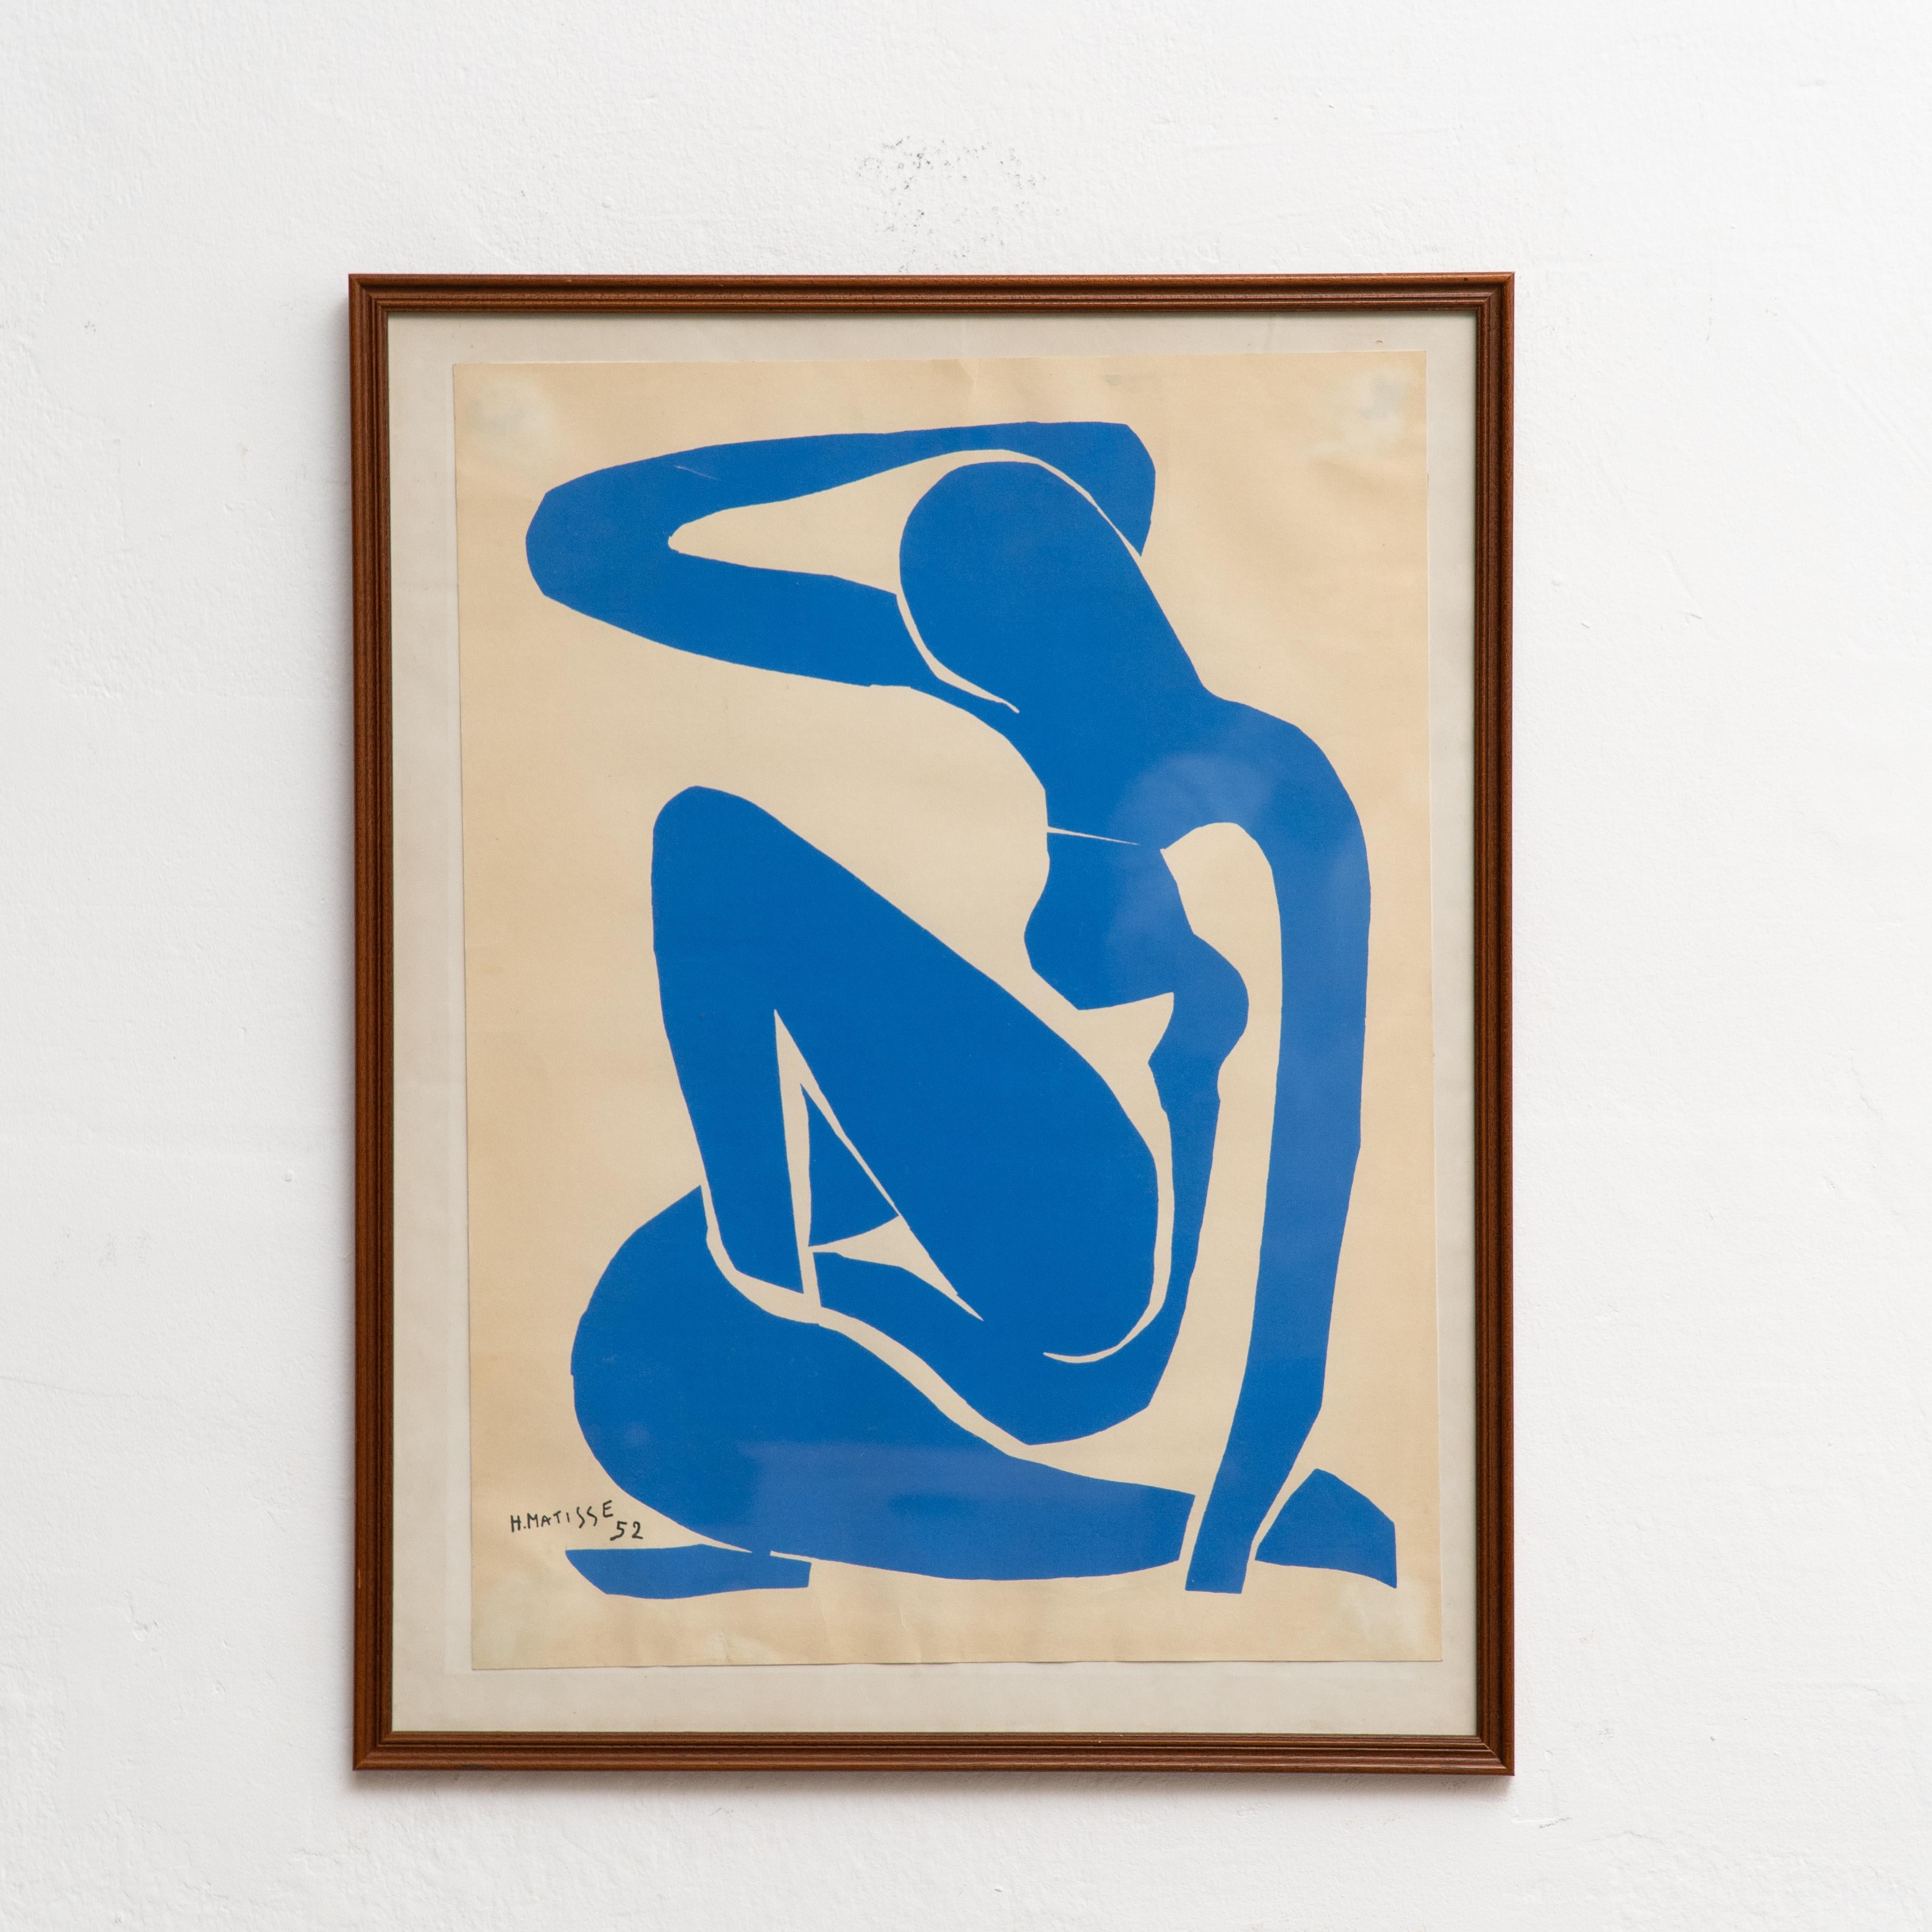 Lithographie en couleurs d'après l'œuvre d'Henri Matisse, vers 1970.

Signé dans la pierre.
Publié par l'Edition des Nouvelles Images, France.
Encadré.

En bon état, avec une usure correspondant à l'âge et à l'utilisation, préservant une belle